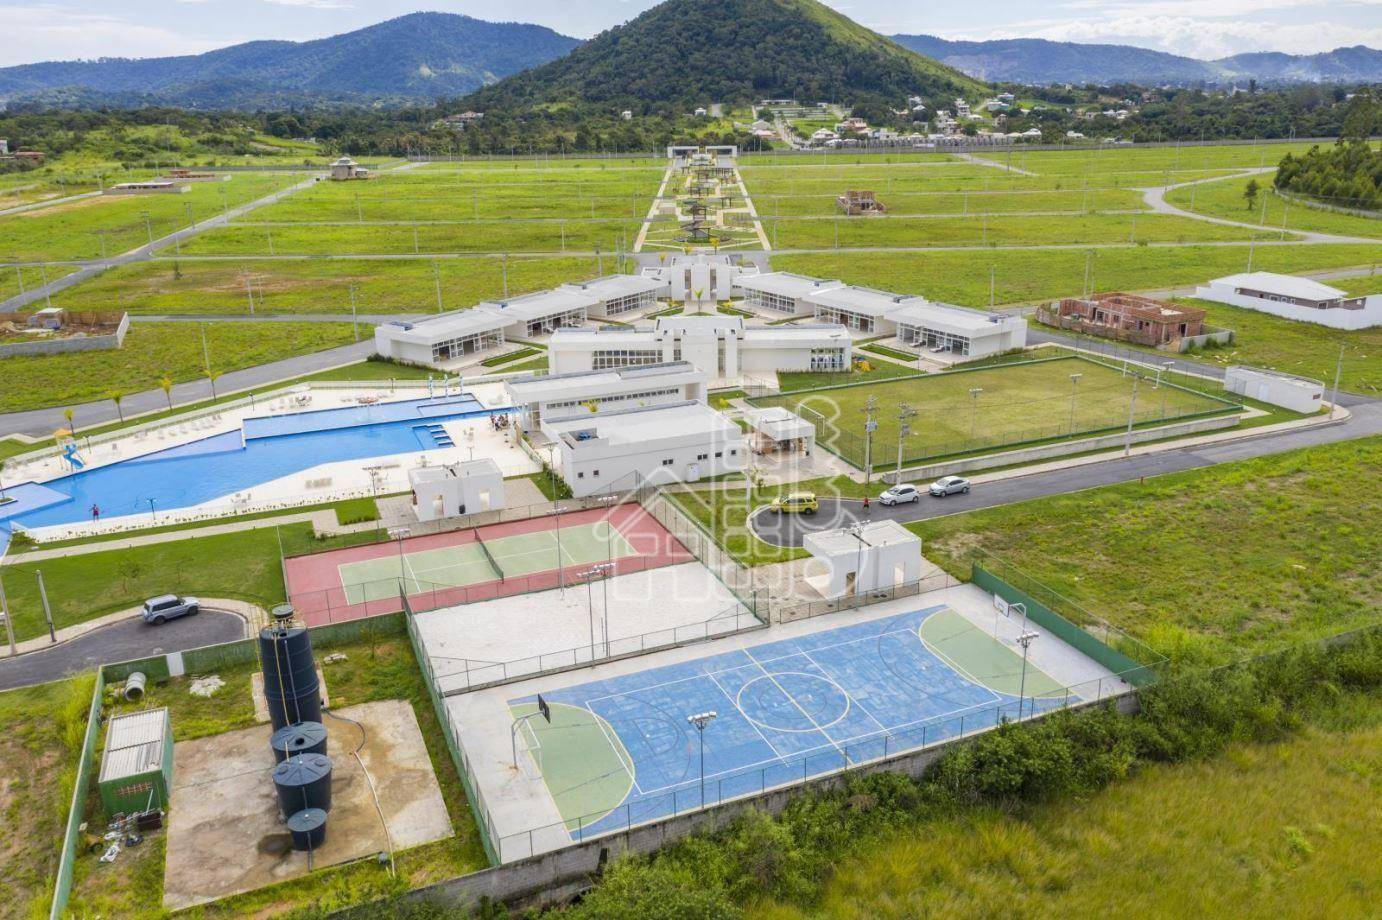 Terreno à venda, 360 m² por R$ 175.000,99 - Cajueiros - Maricá/RJ